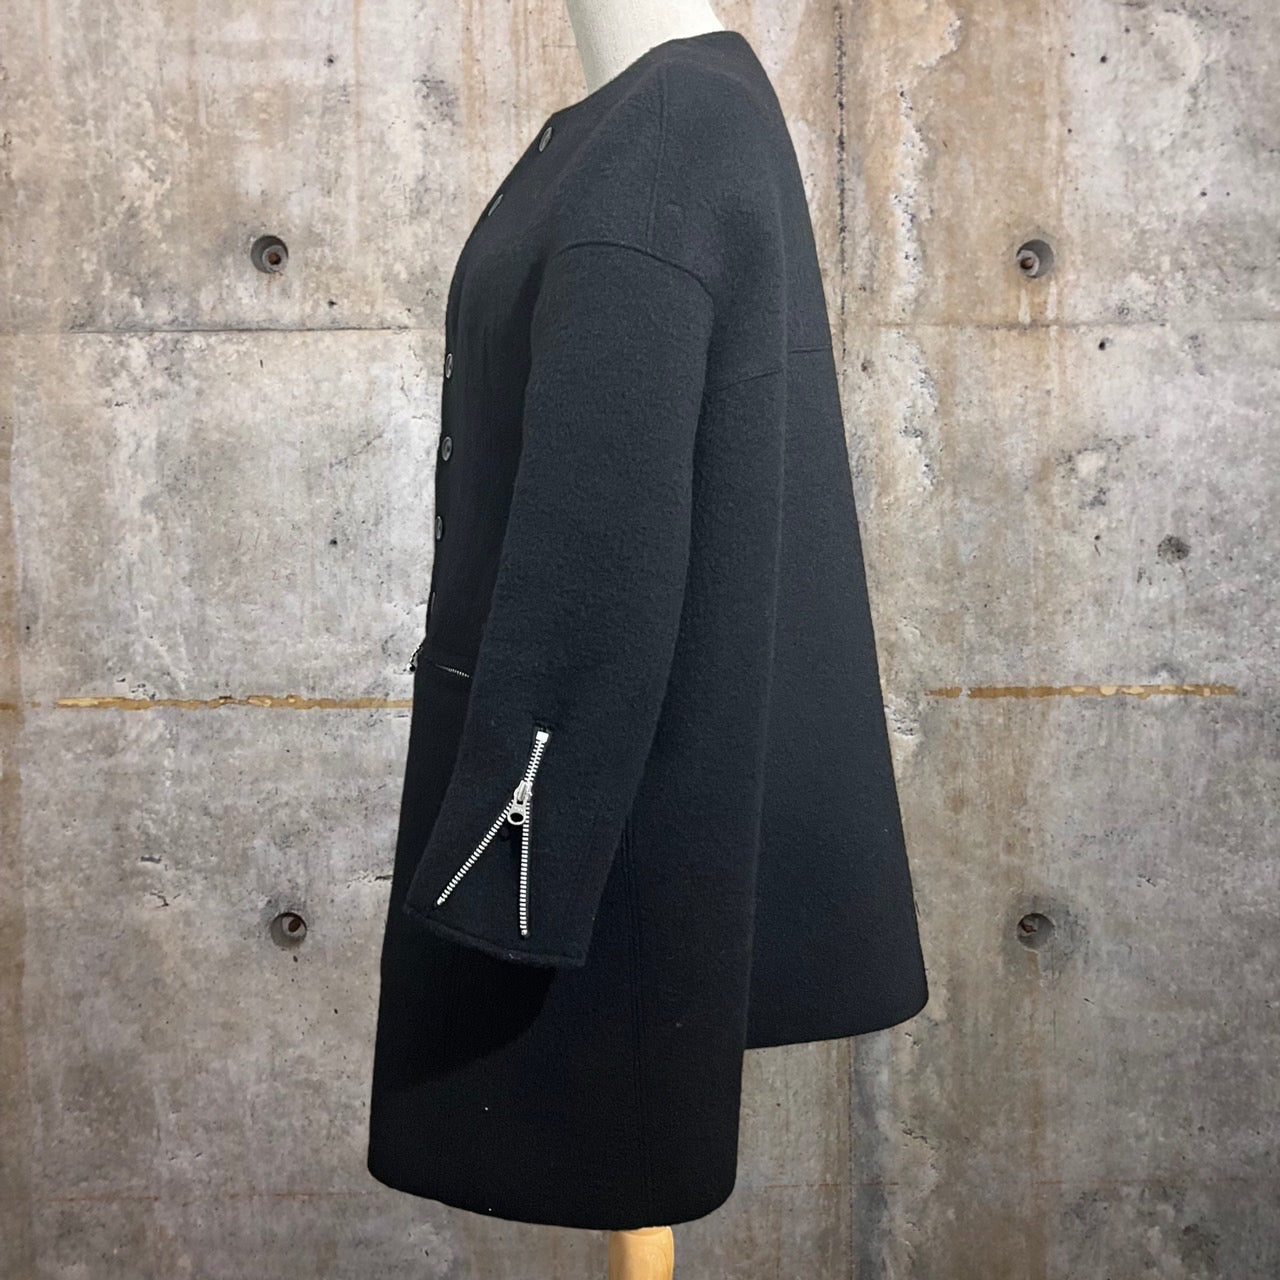 COMME des GARCONS JUNYA WATANABE(コムデギャルソンジュンヤワタナベ) 17AW Three-dimensional flare melton collarless coat/立体フレアノーカラーメルトンコート/ウール JT-J050 S ブラック AD2017